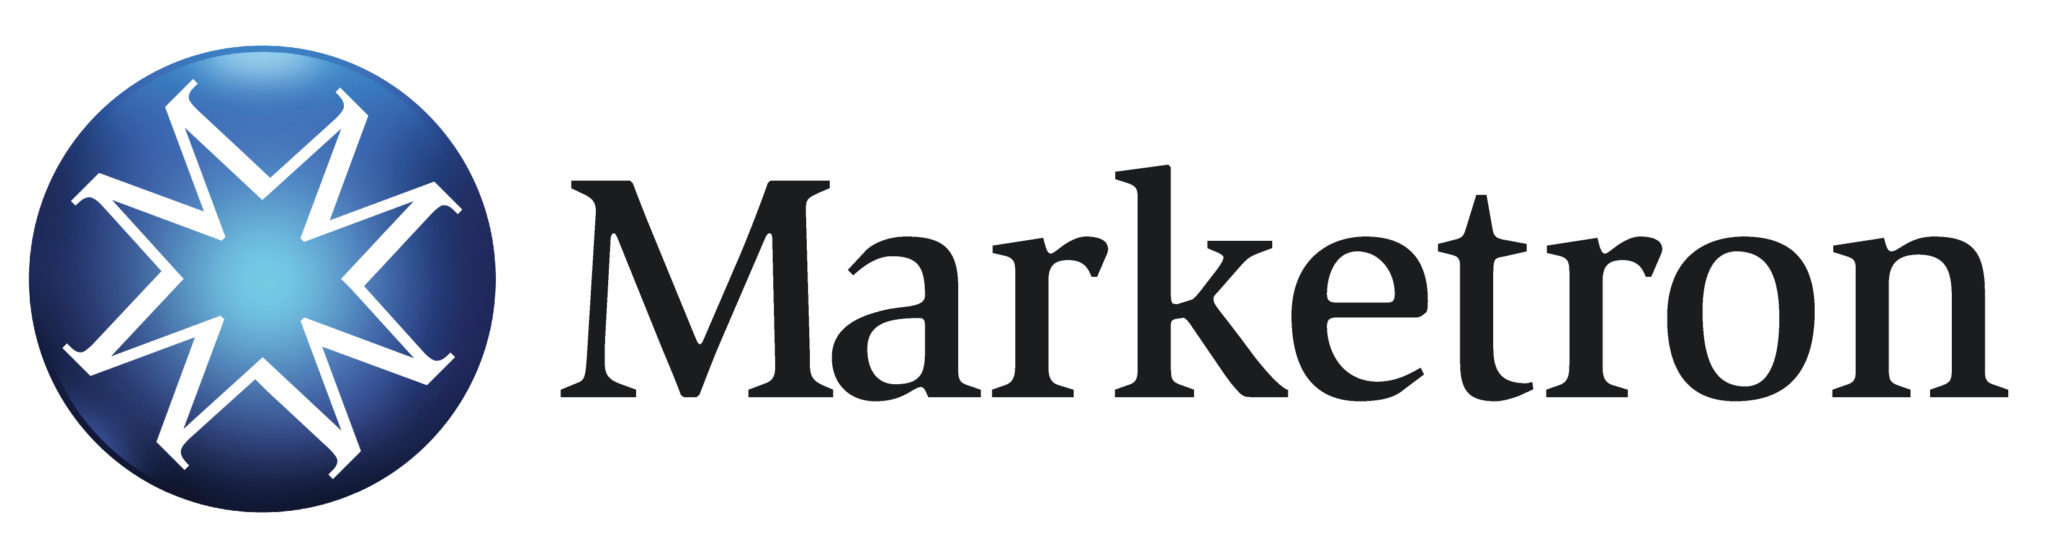 Marketron logo